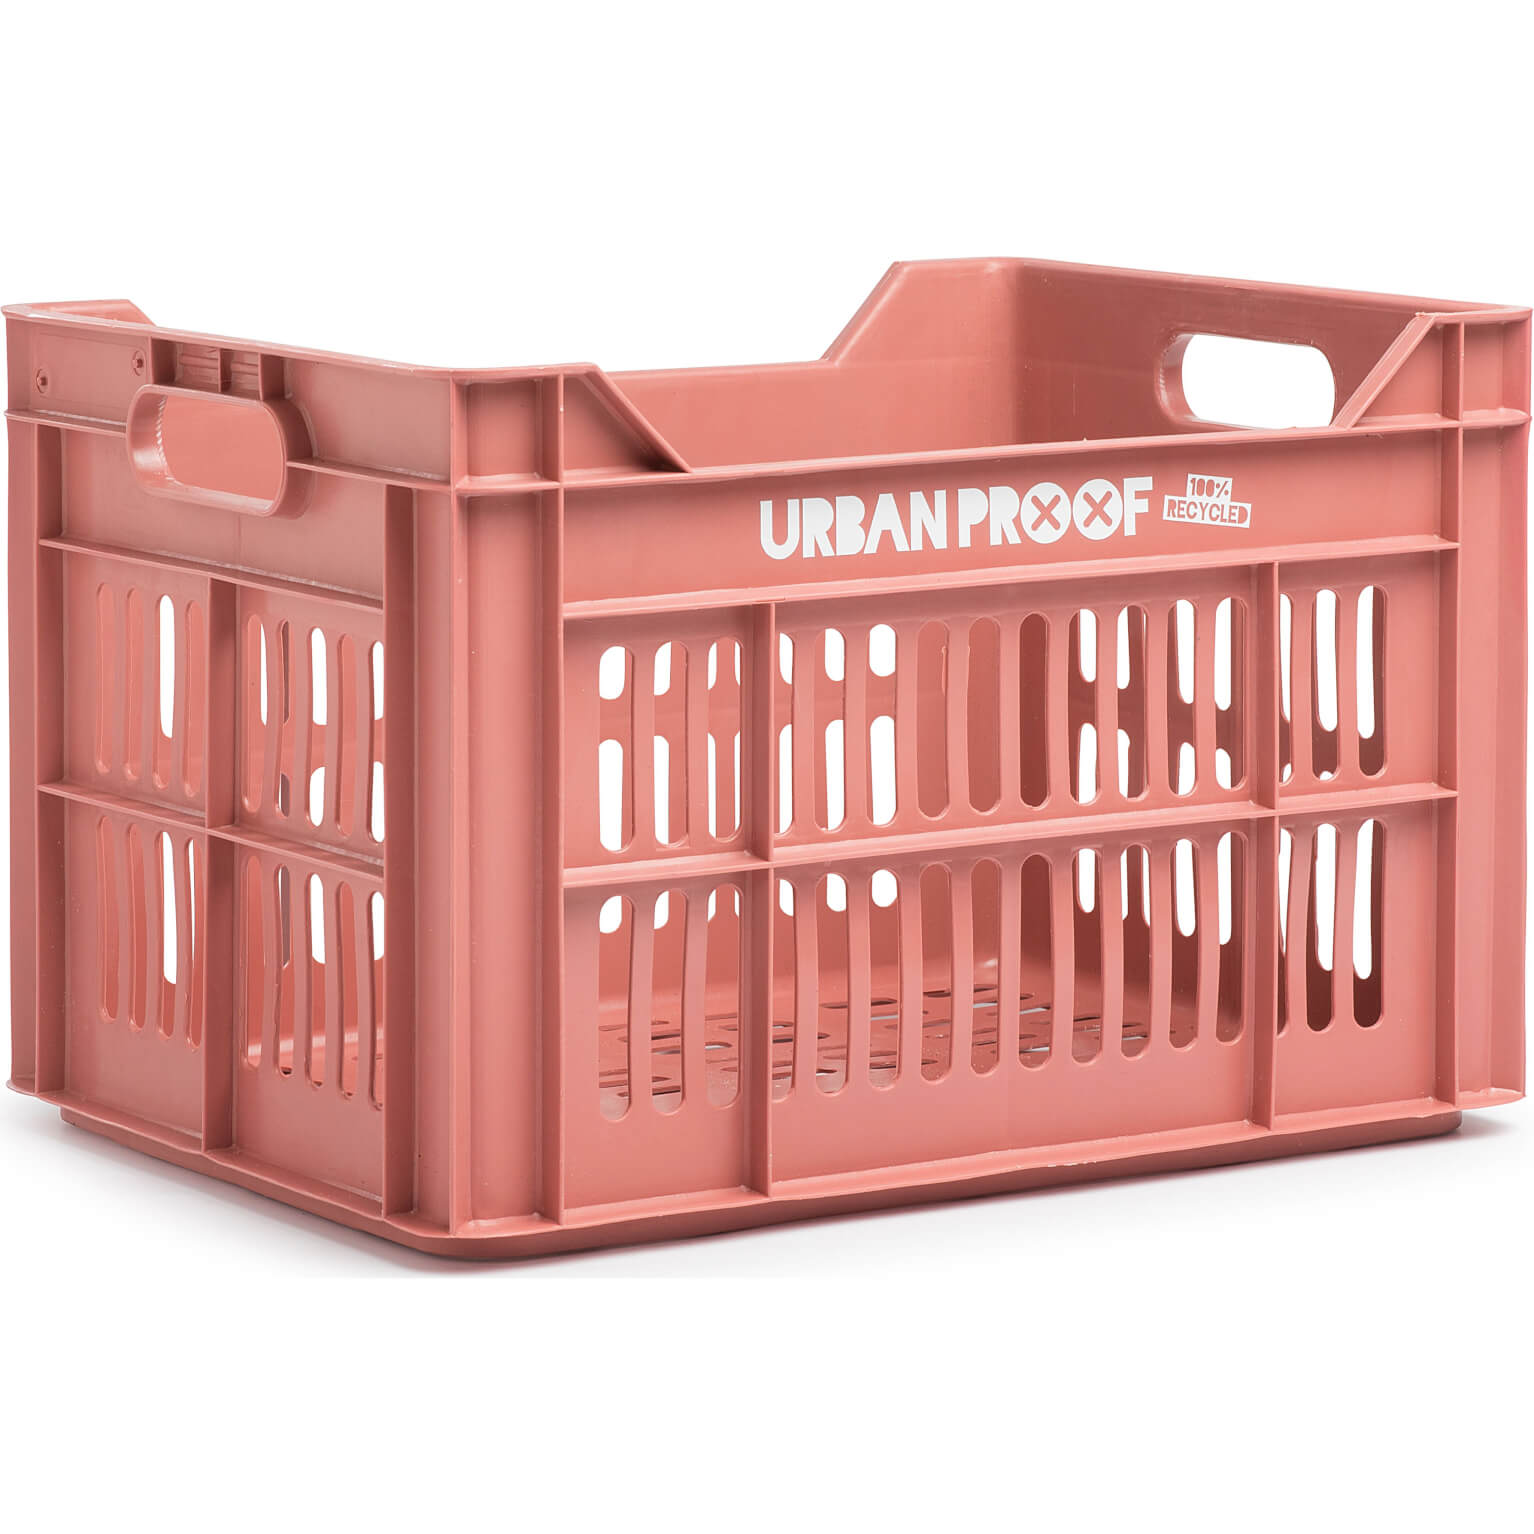 Urban Proof fietskrat 30 L warm pink Recycled